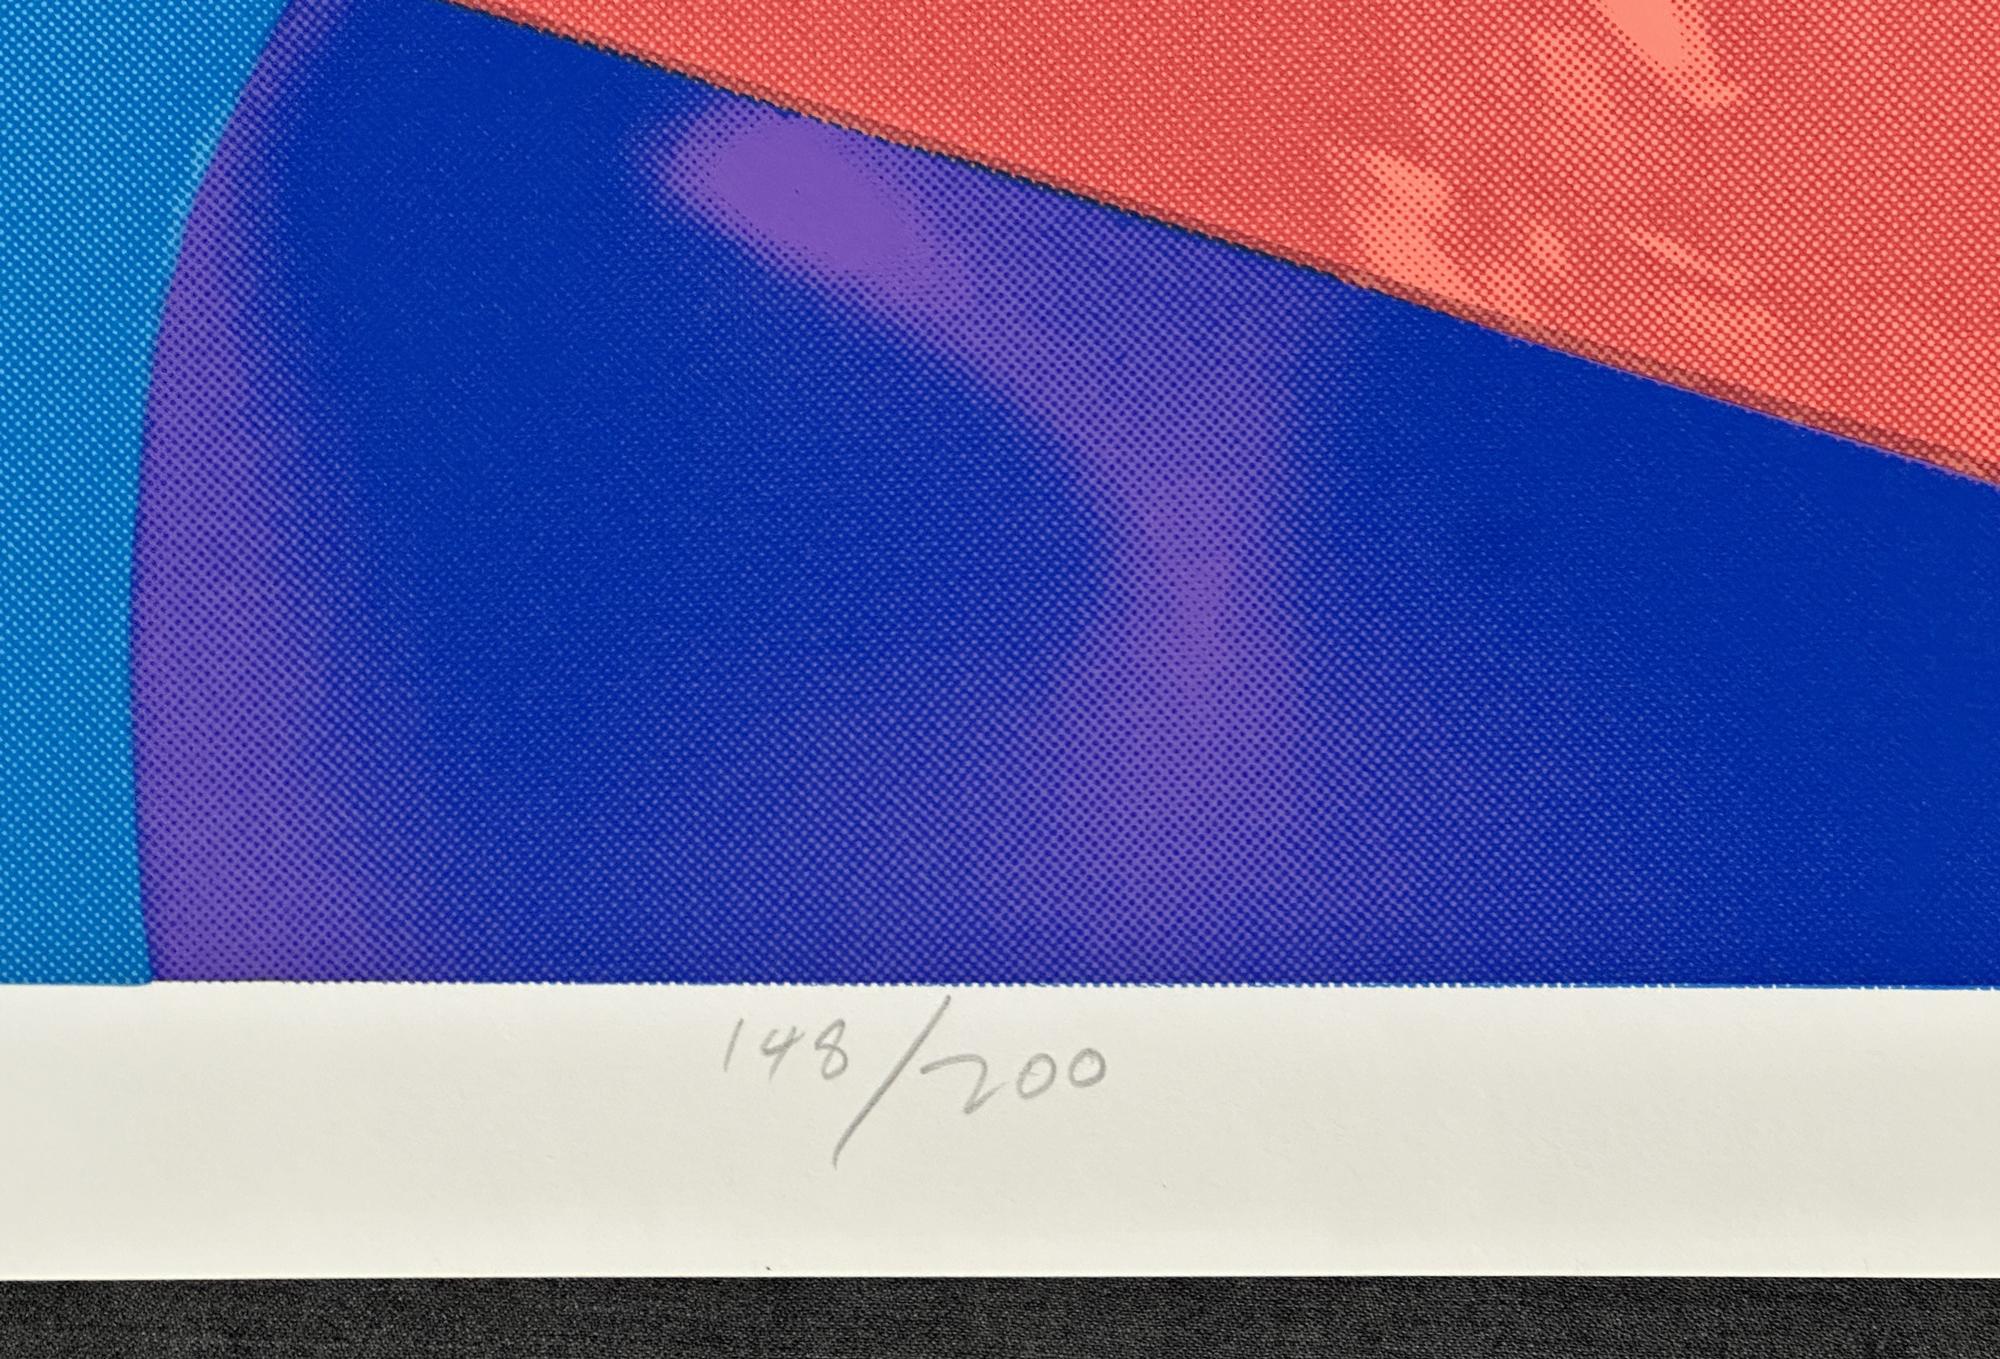 Richard Bernstein
Rubin - 1978
Druck - Siebdruck auf schwerem Papier
Papier: 30'' x 26'' Zoll
Bildgröße: 28